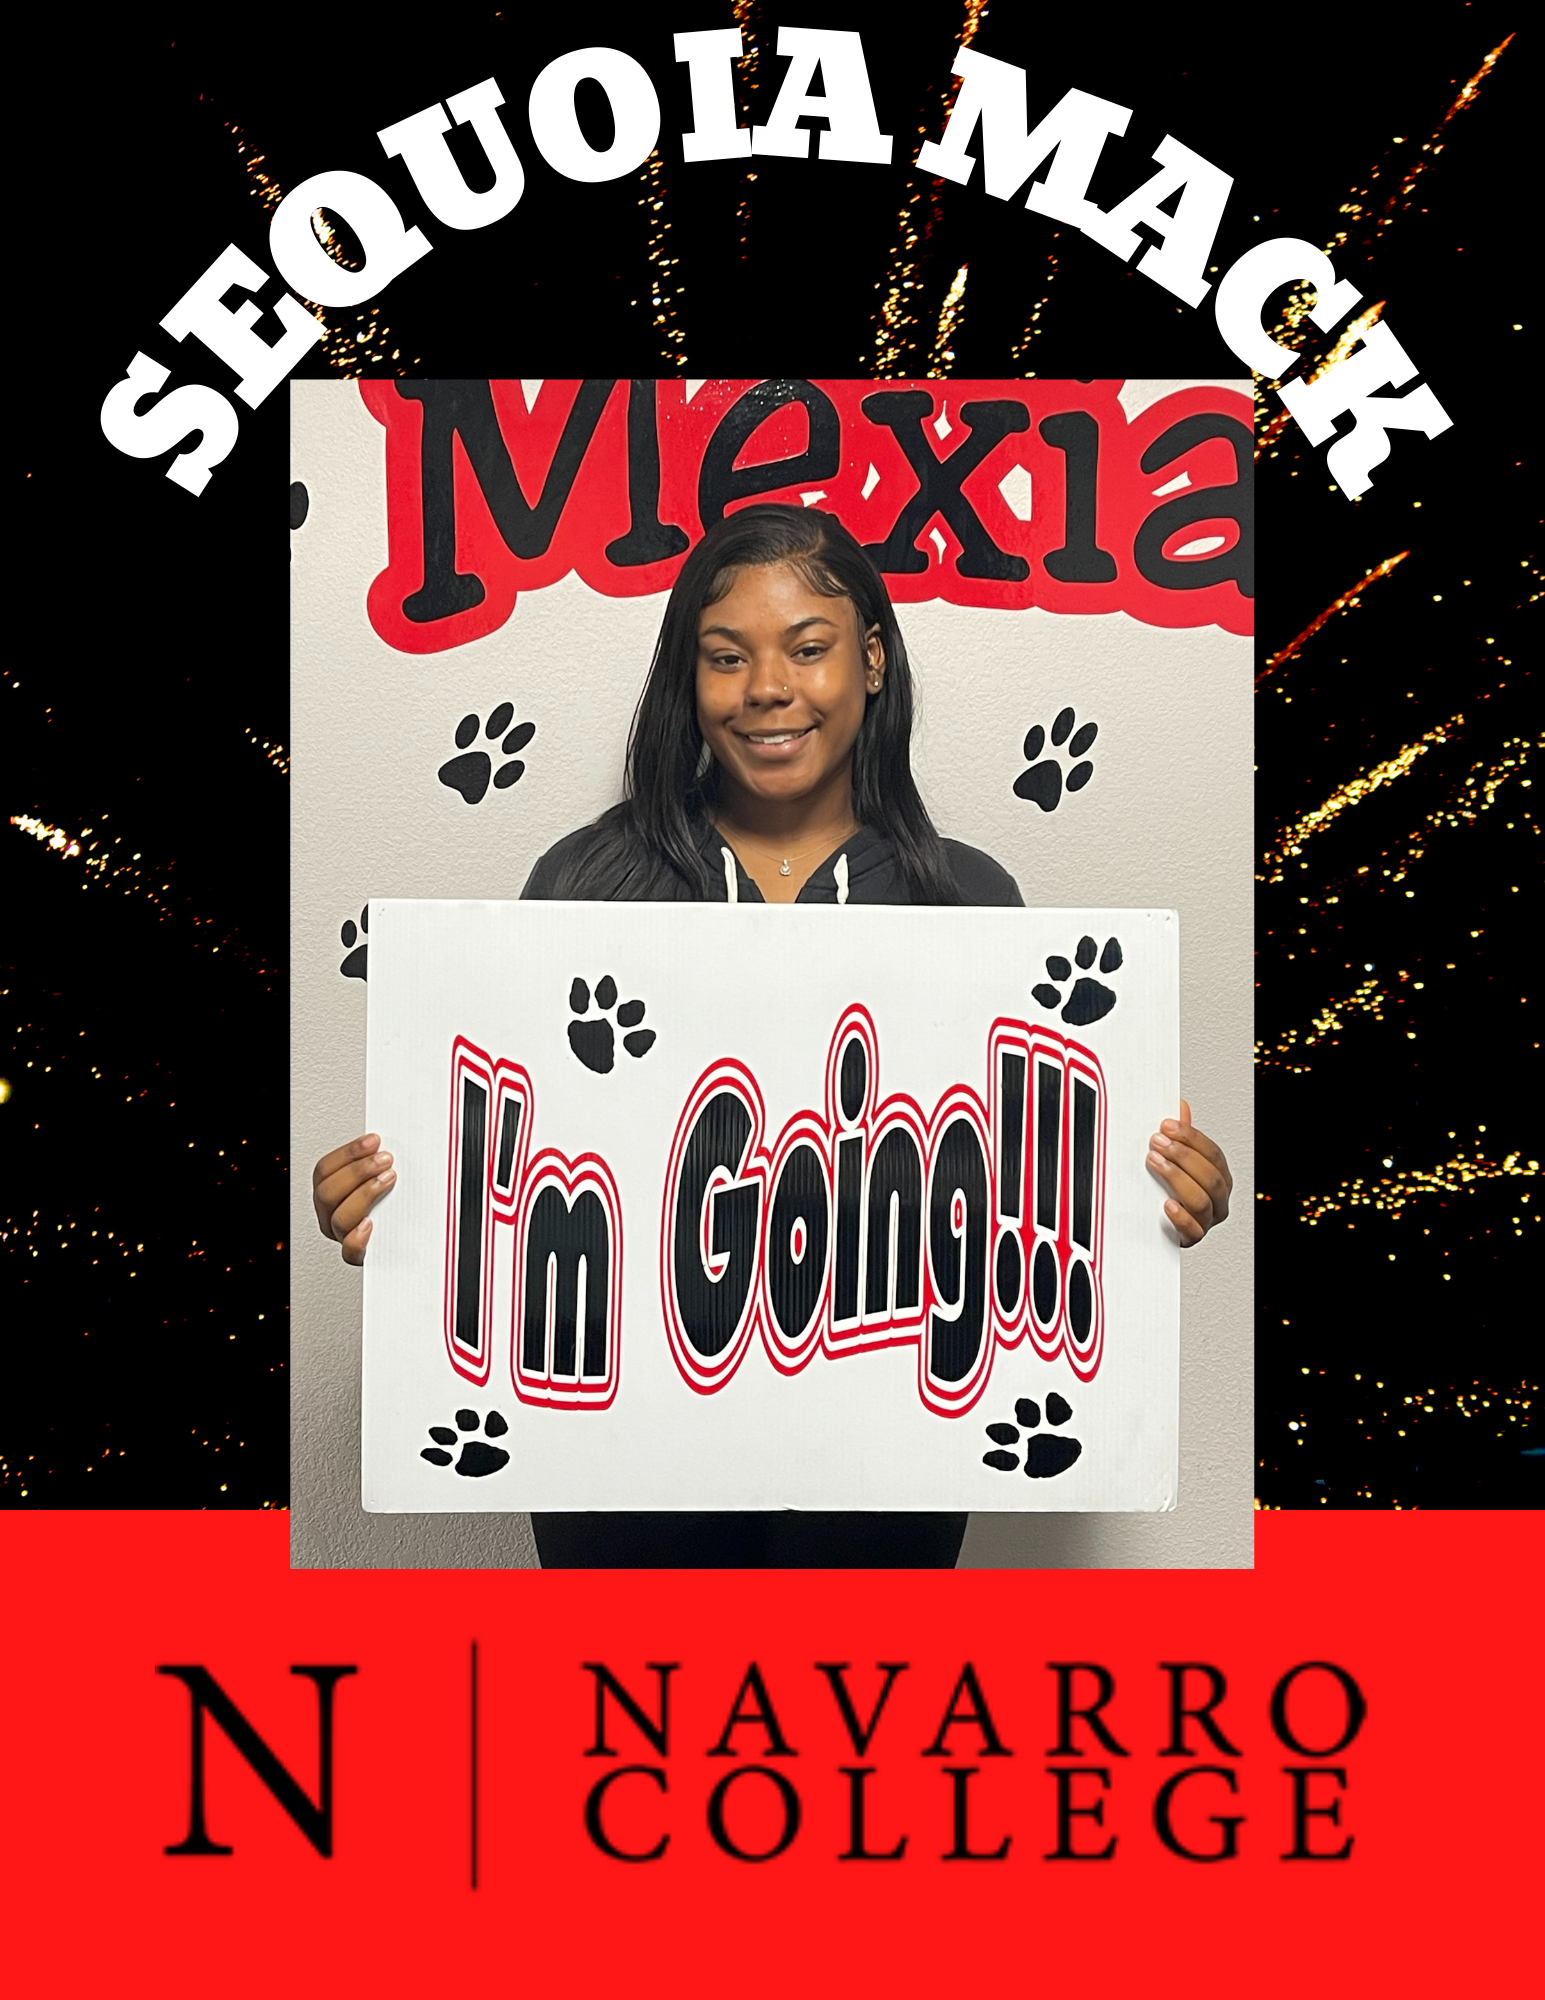 Sequoia Mack - I'm Going! - Navarro College